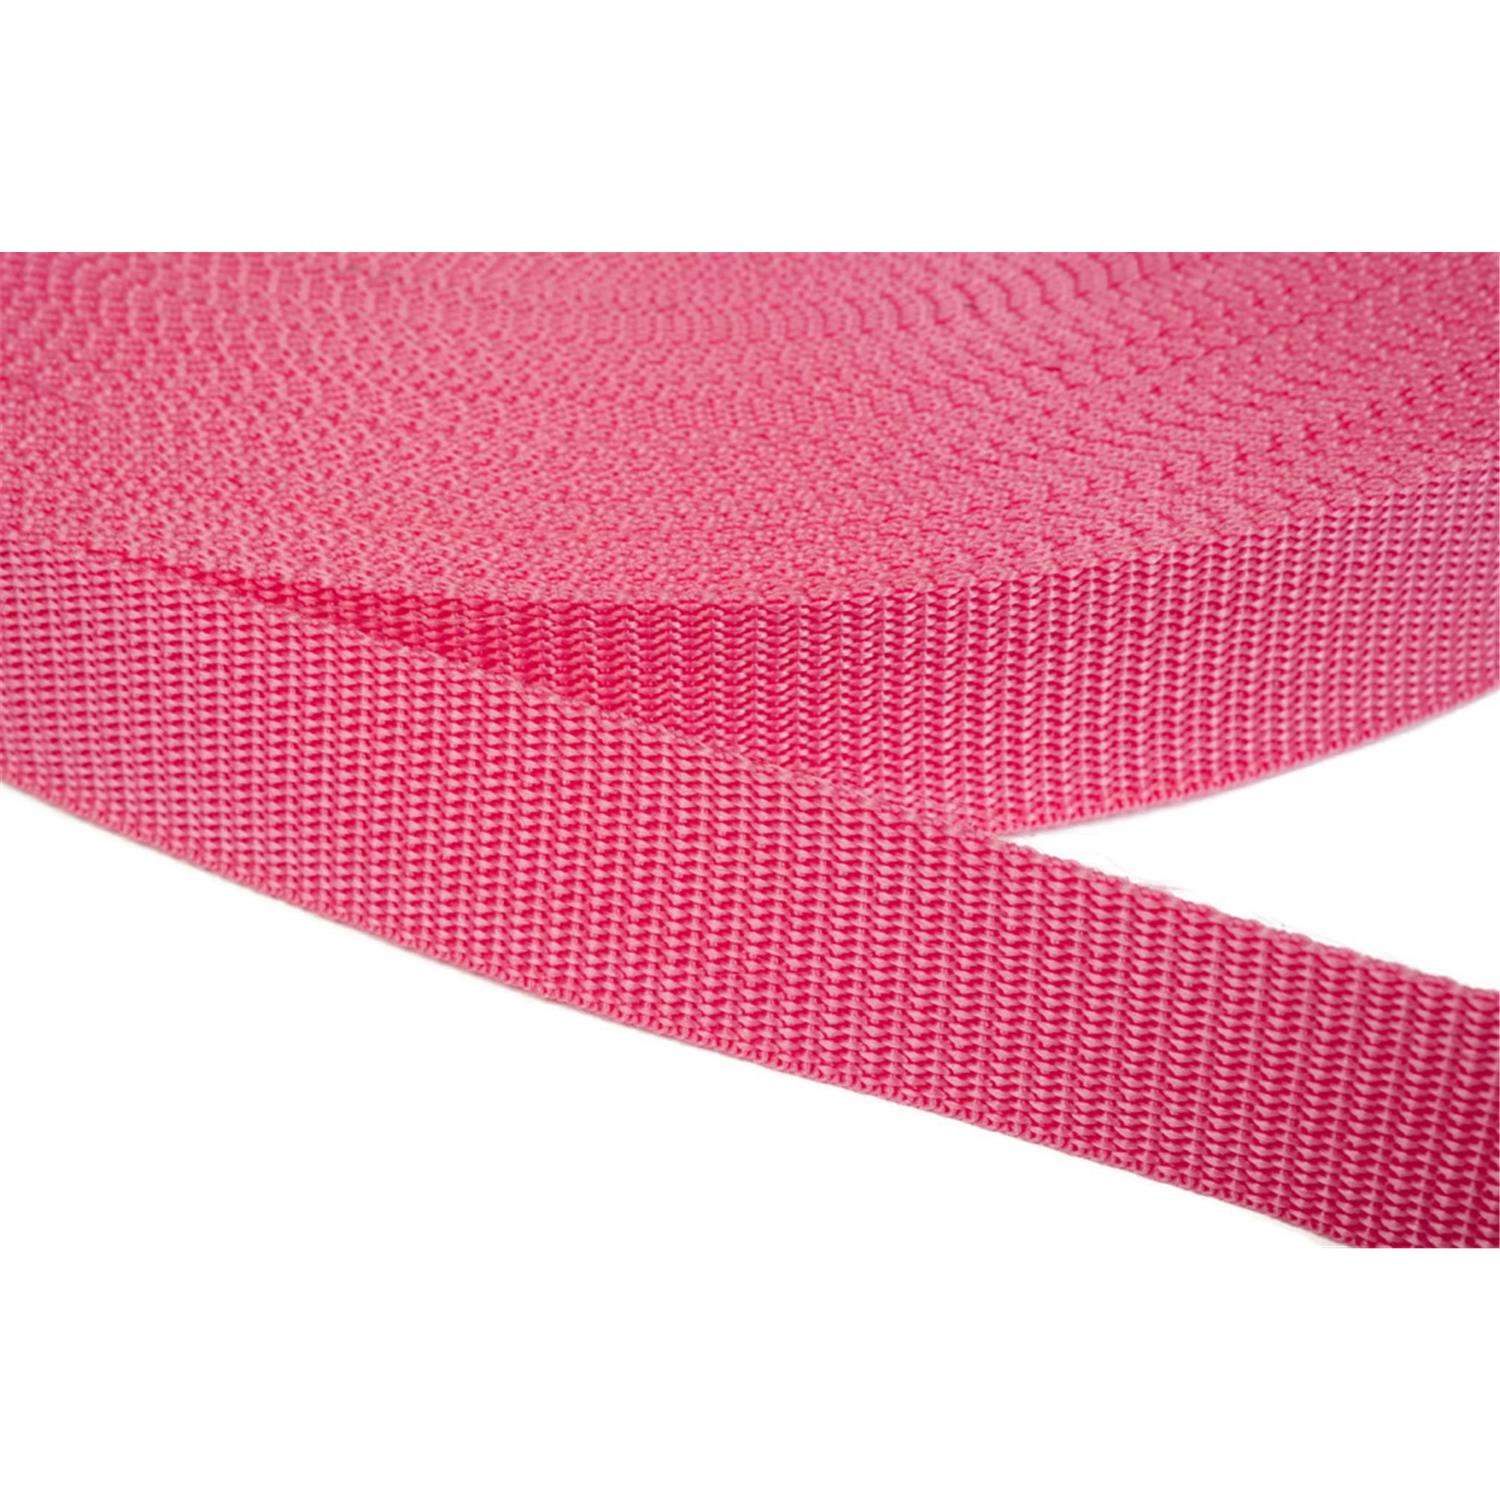 Gurtband 50mm breit aus Polypropylen in 41 Farben 13 - pink 6 Meter